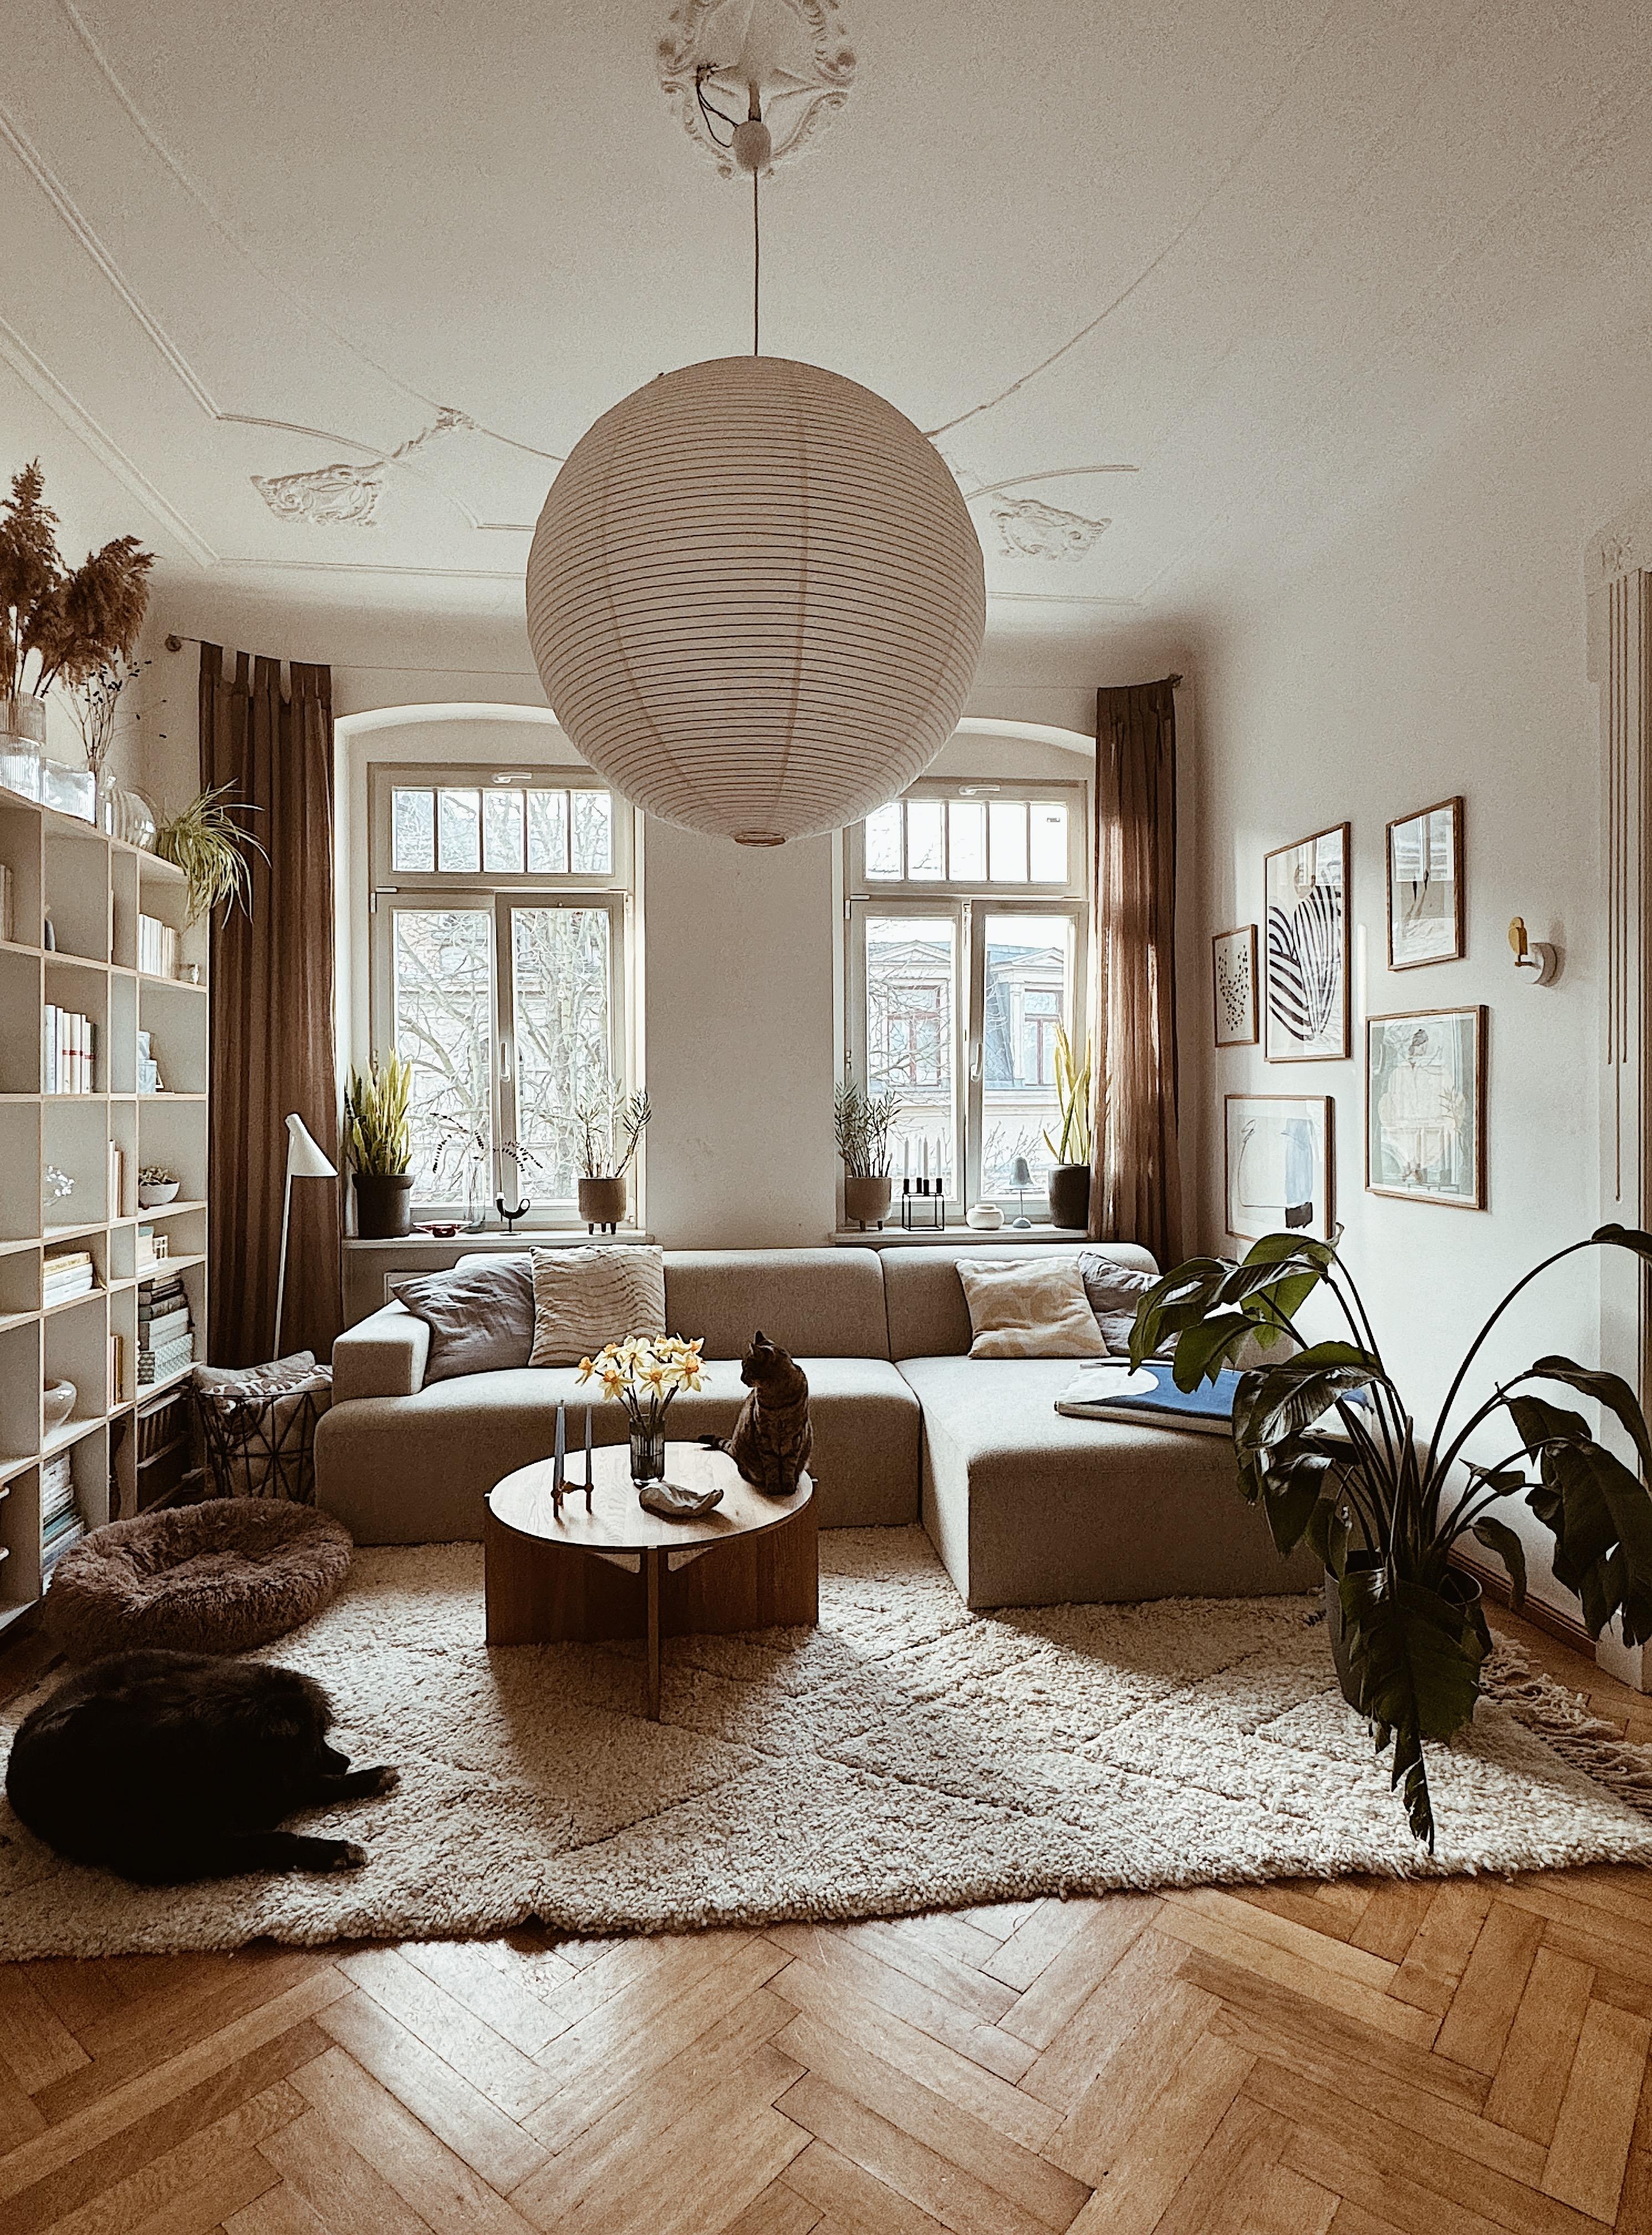 Wohnzimmer-Make over... neue Lampe, neues Sofa & neuer Teppich #wohnzimmerliebe #interior # Altbauwohnung #sofaliebe #teppichliebe